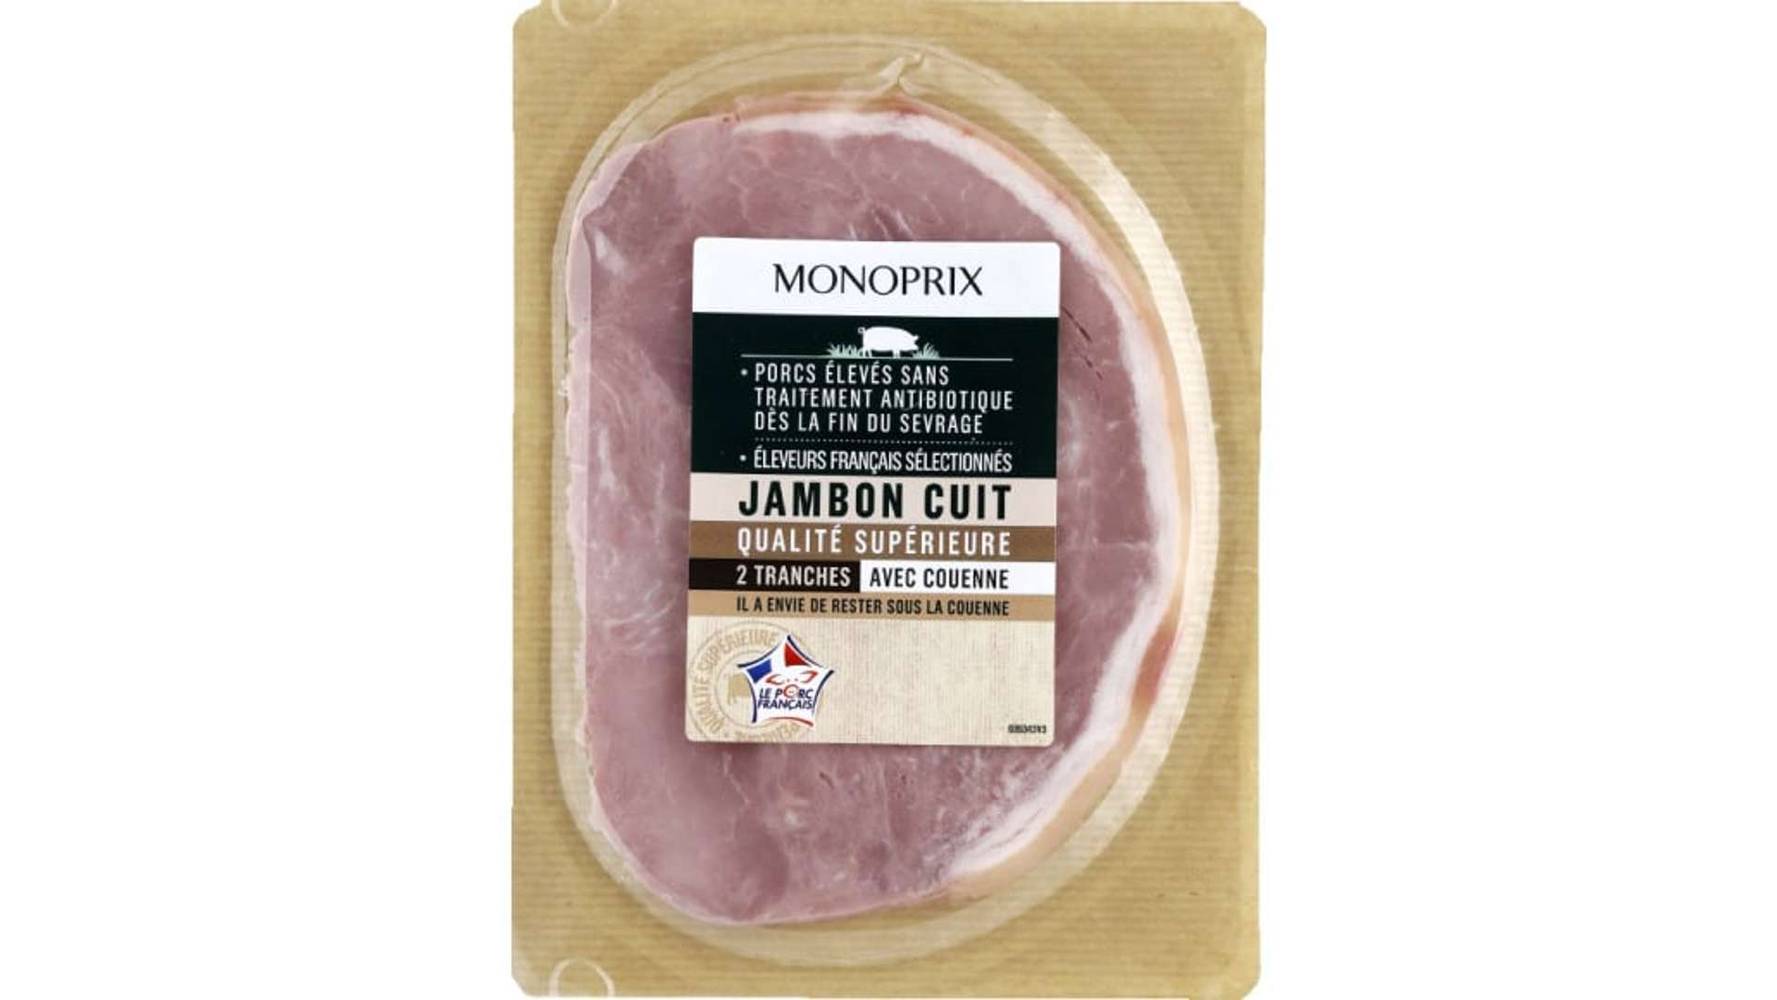 Monoprix - Jambon cuit qualité supérieure avec couenne